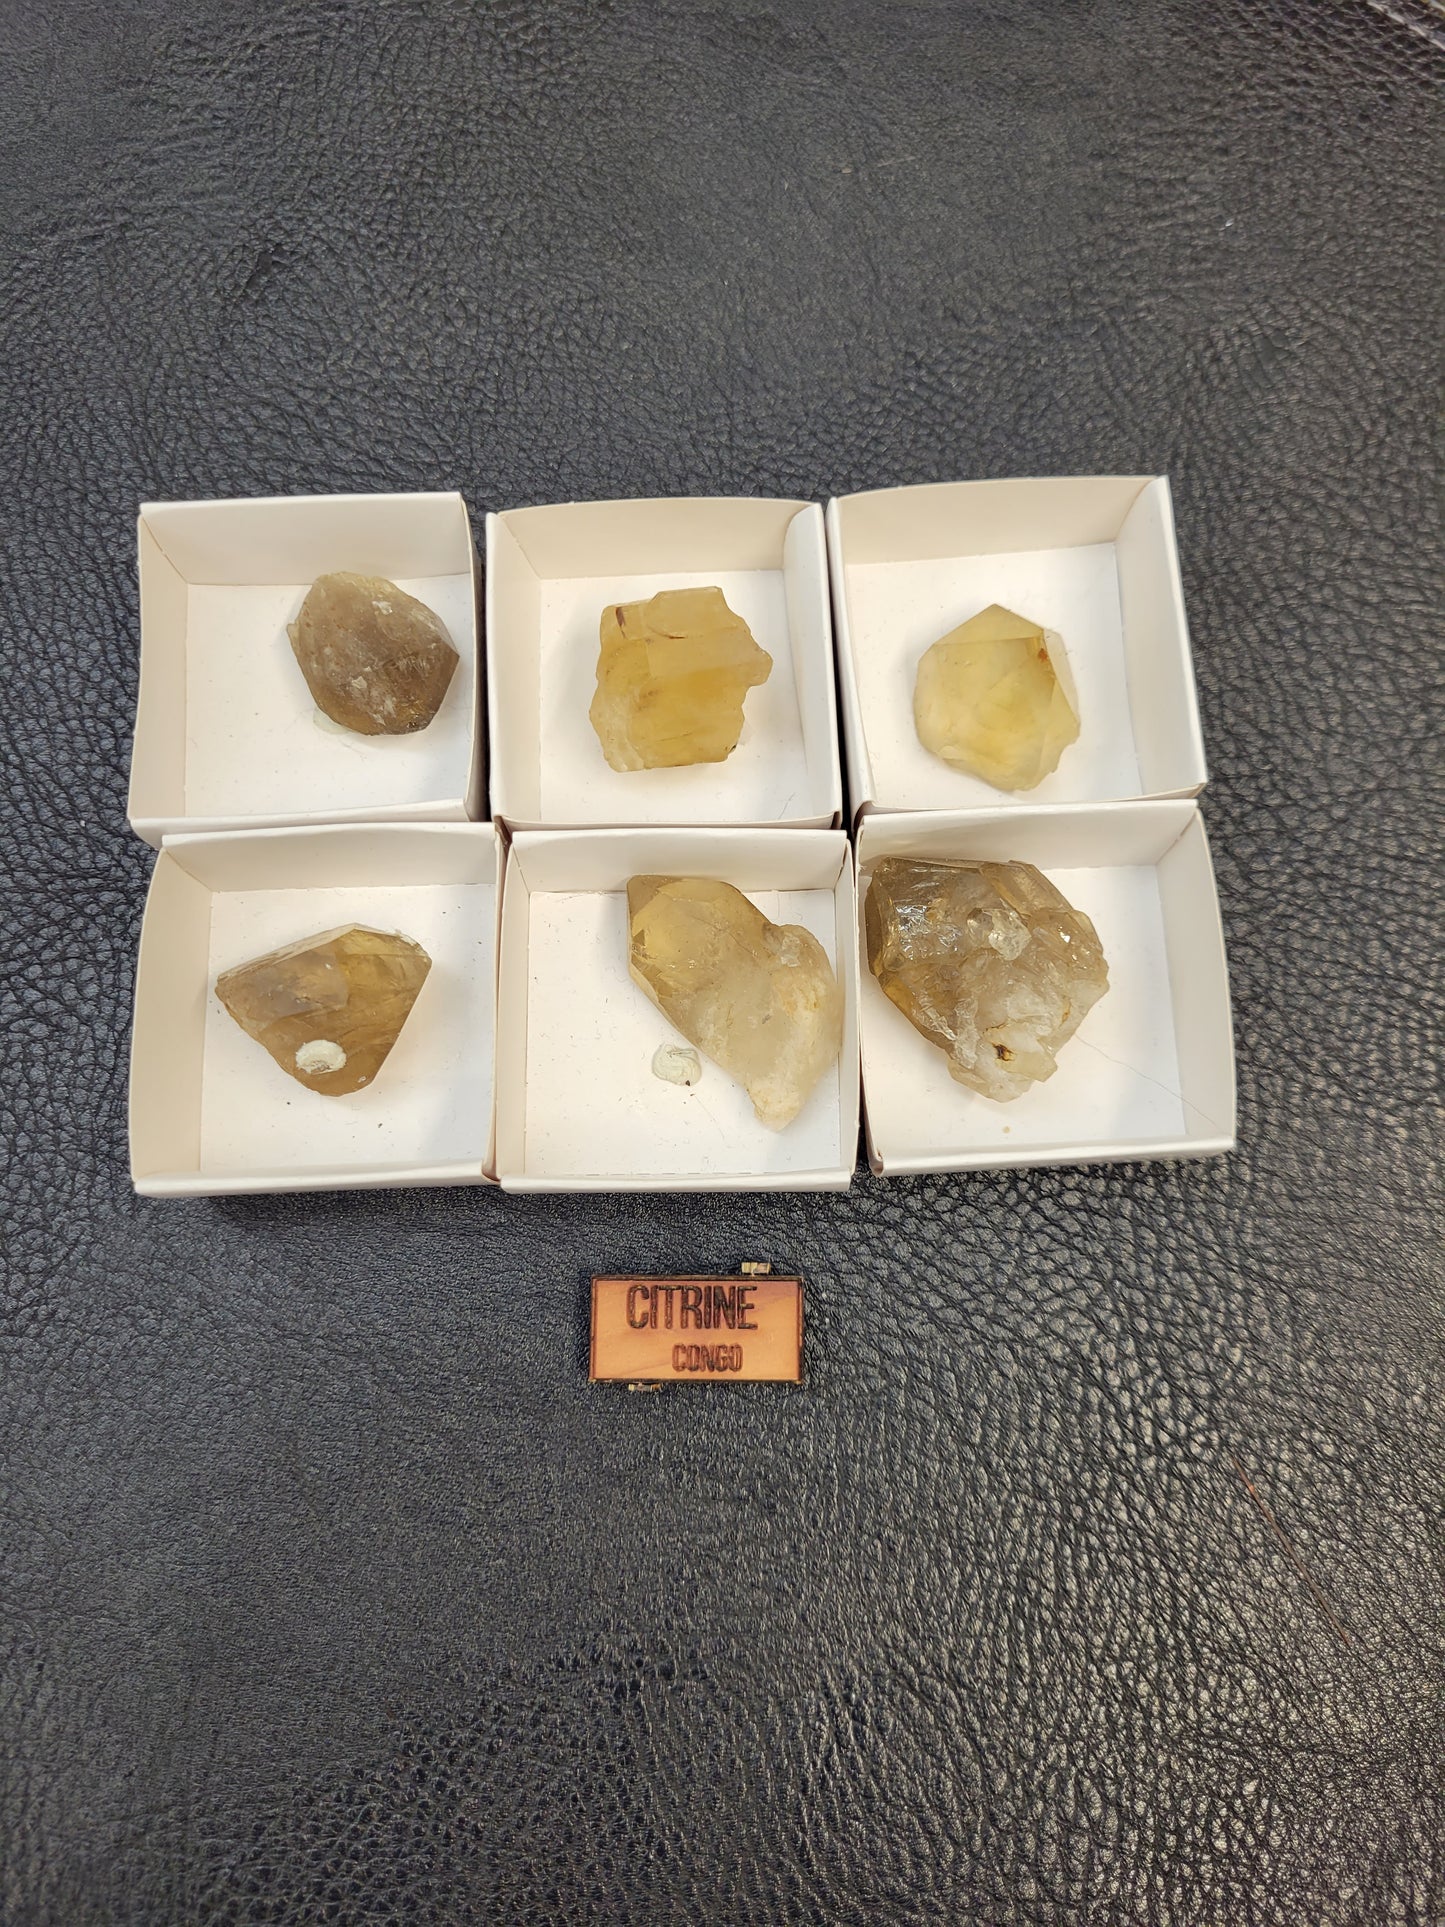 Various specimen thumbnails